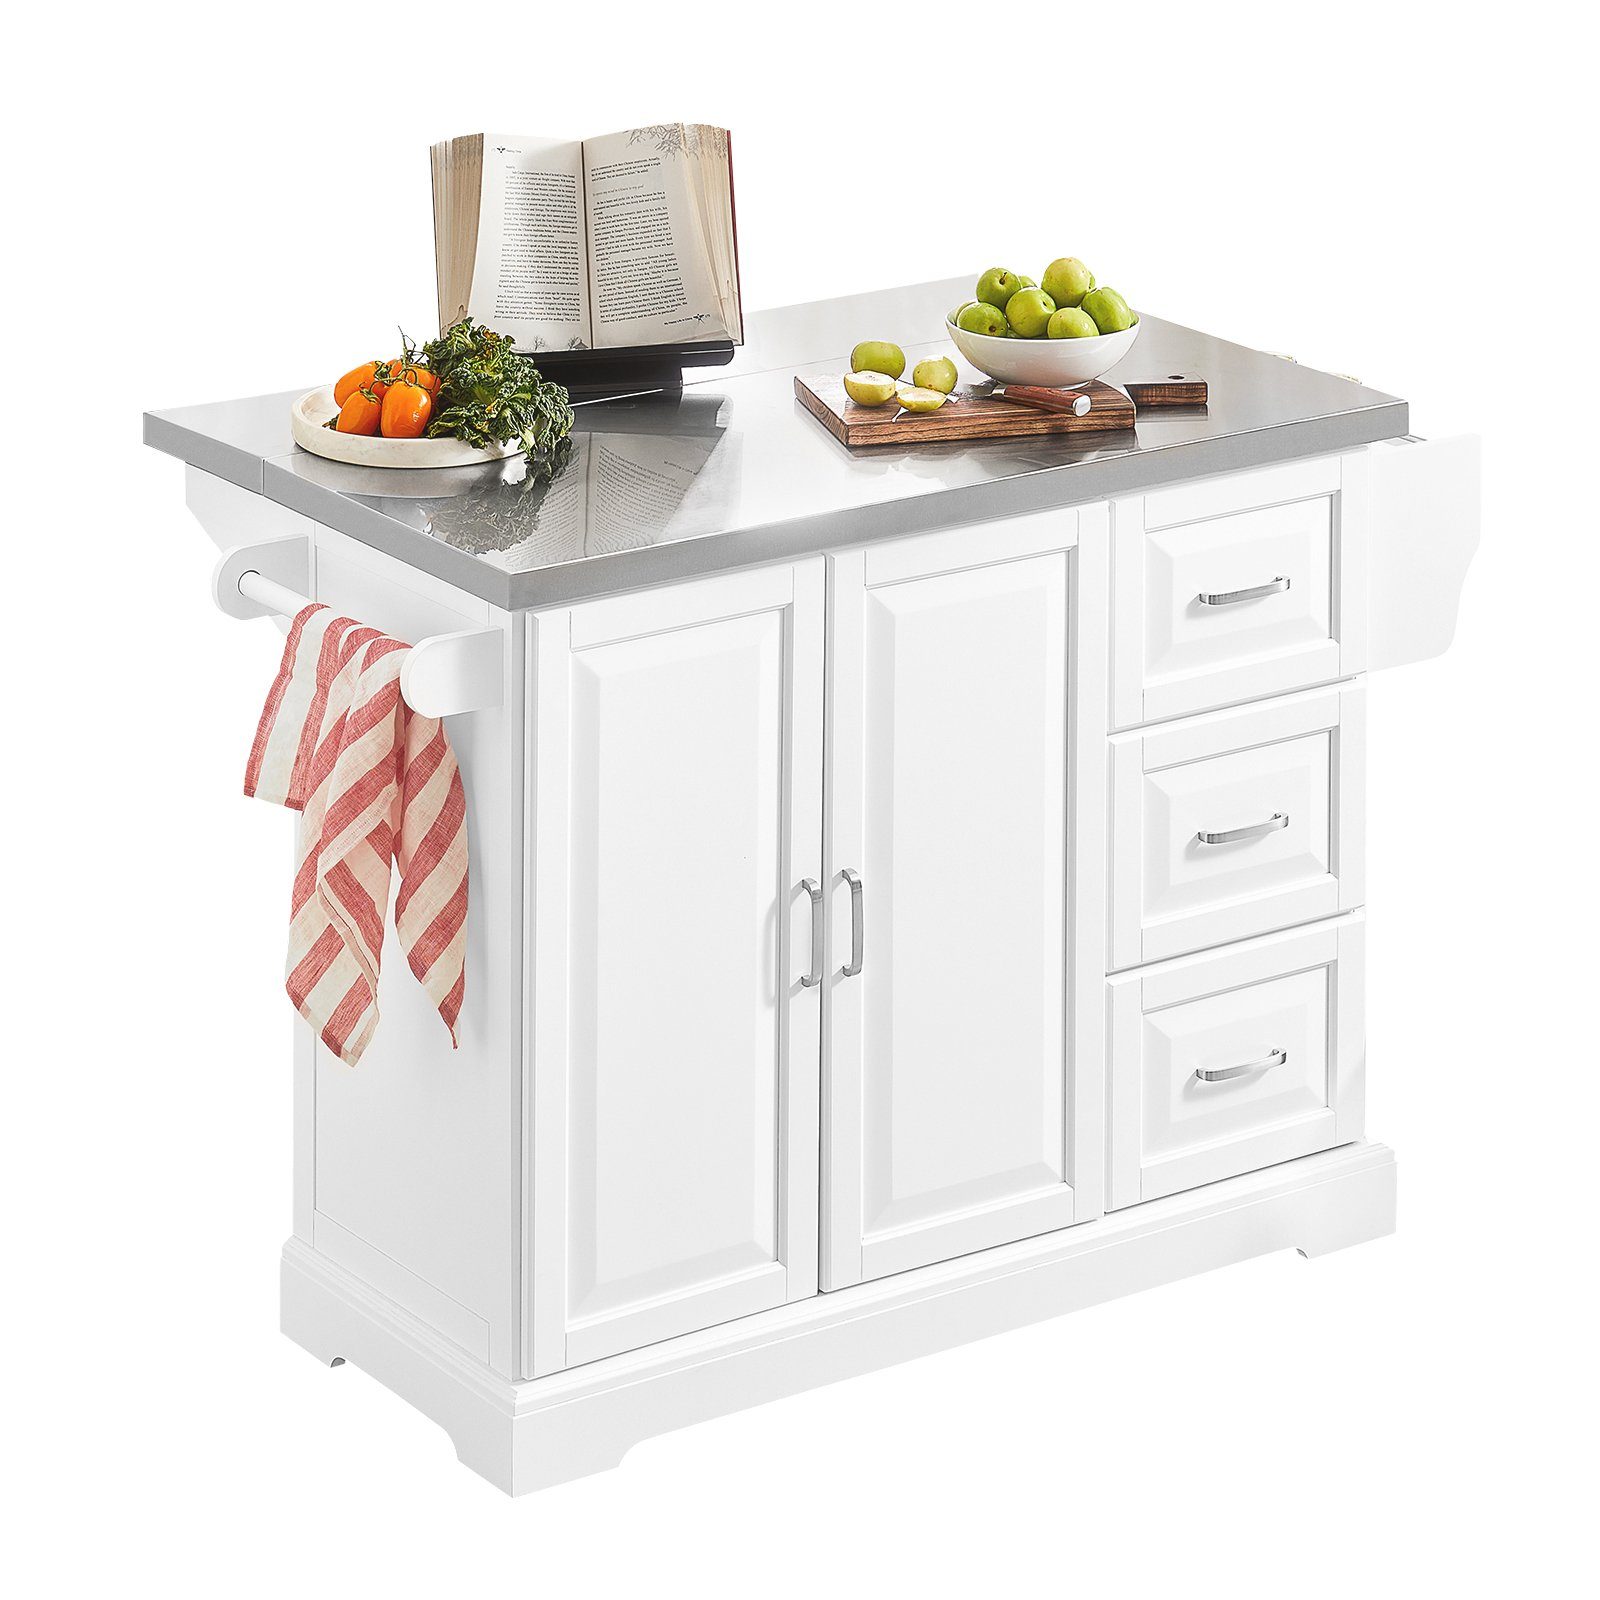 SoBuy Küchenwagen FKW41, Küchenschrank Sideboard Kücheninsel weiß-grau Arbeitsfläche mit erweiterbarer